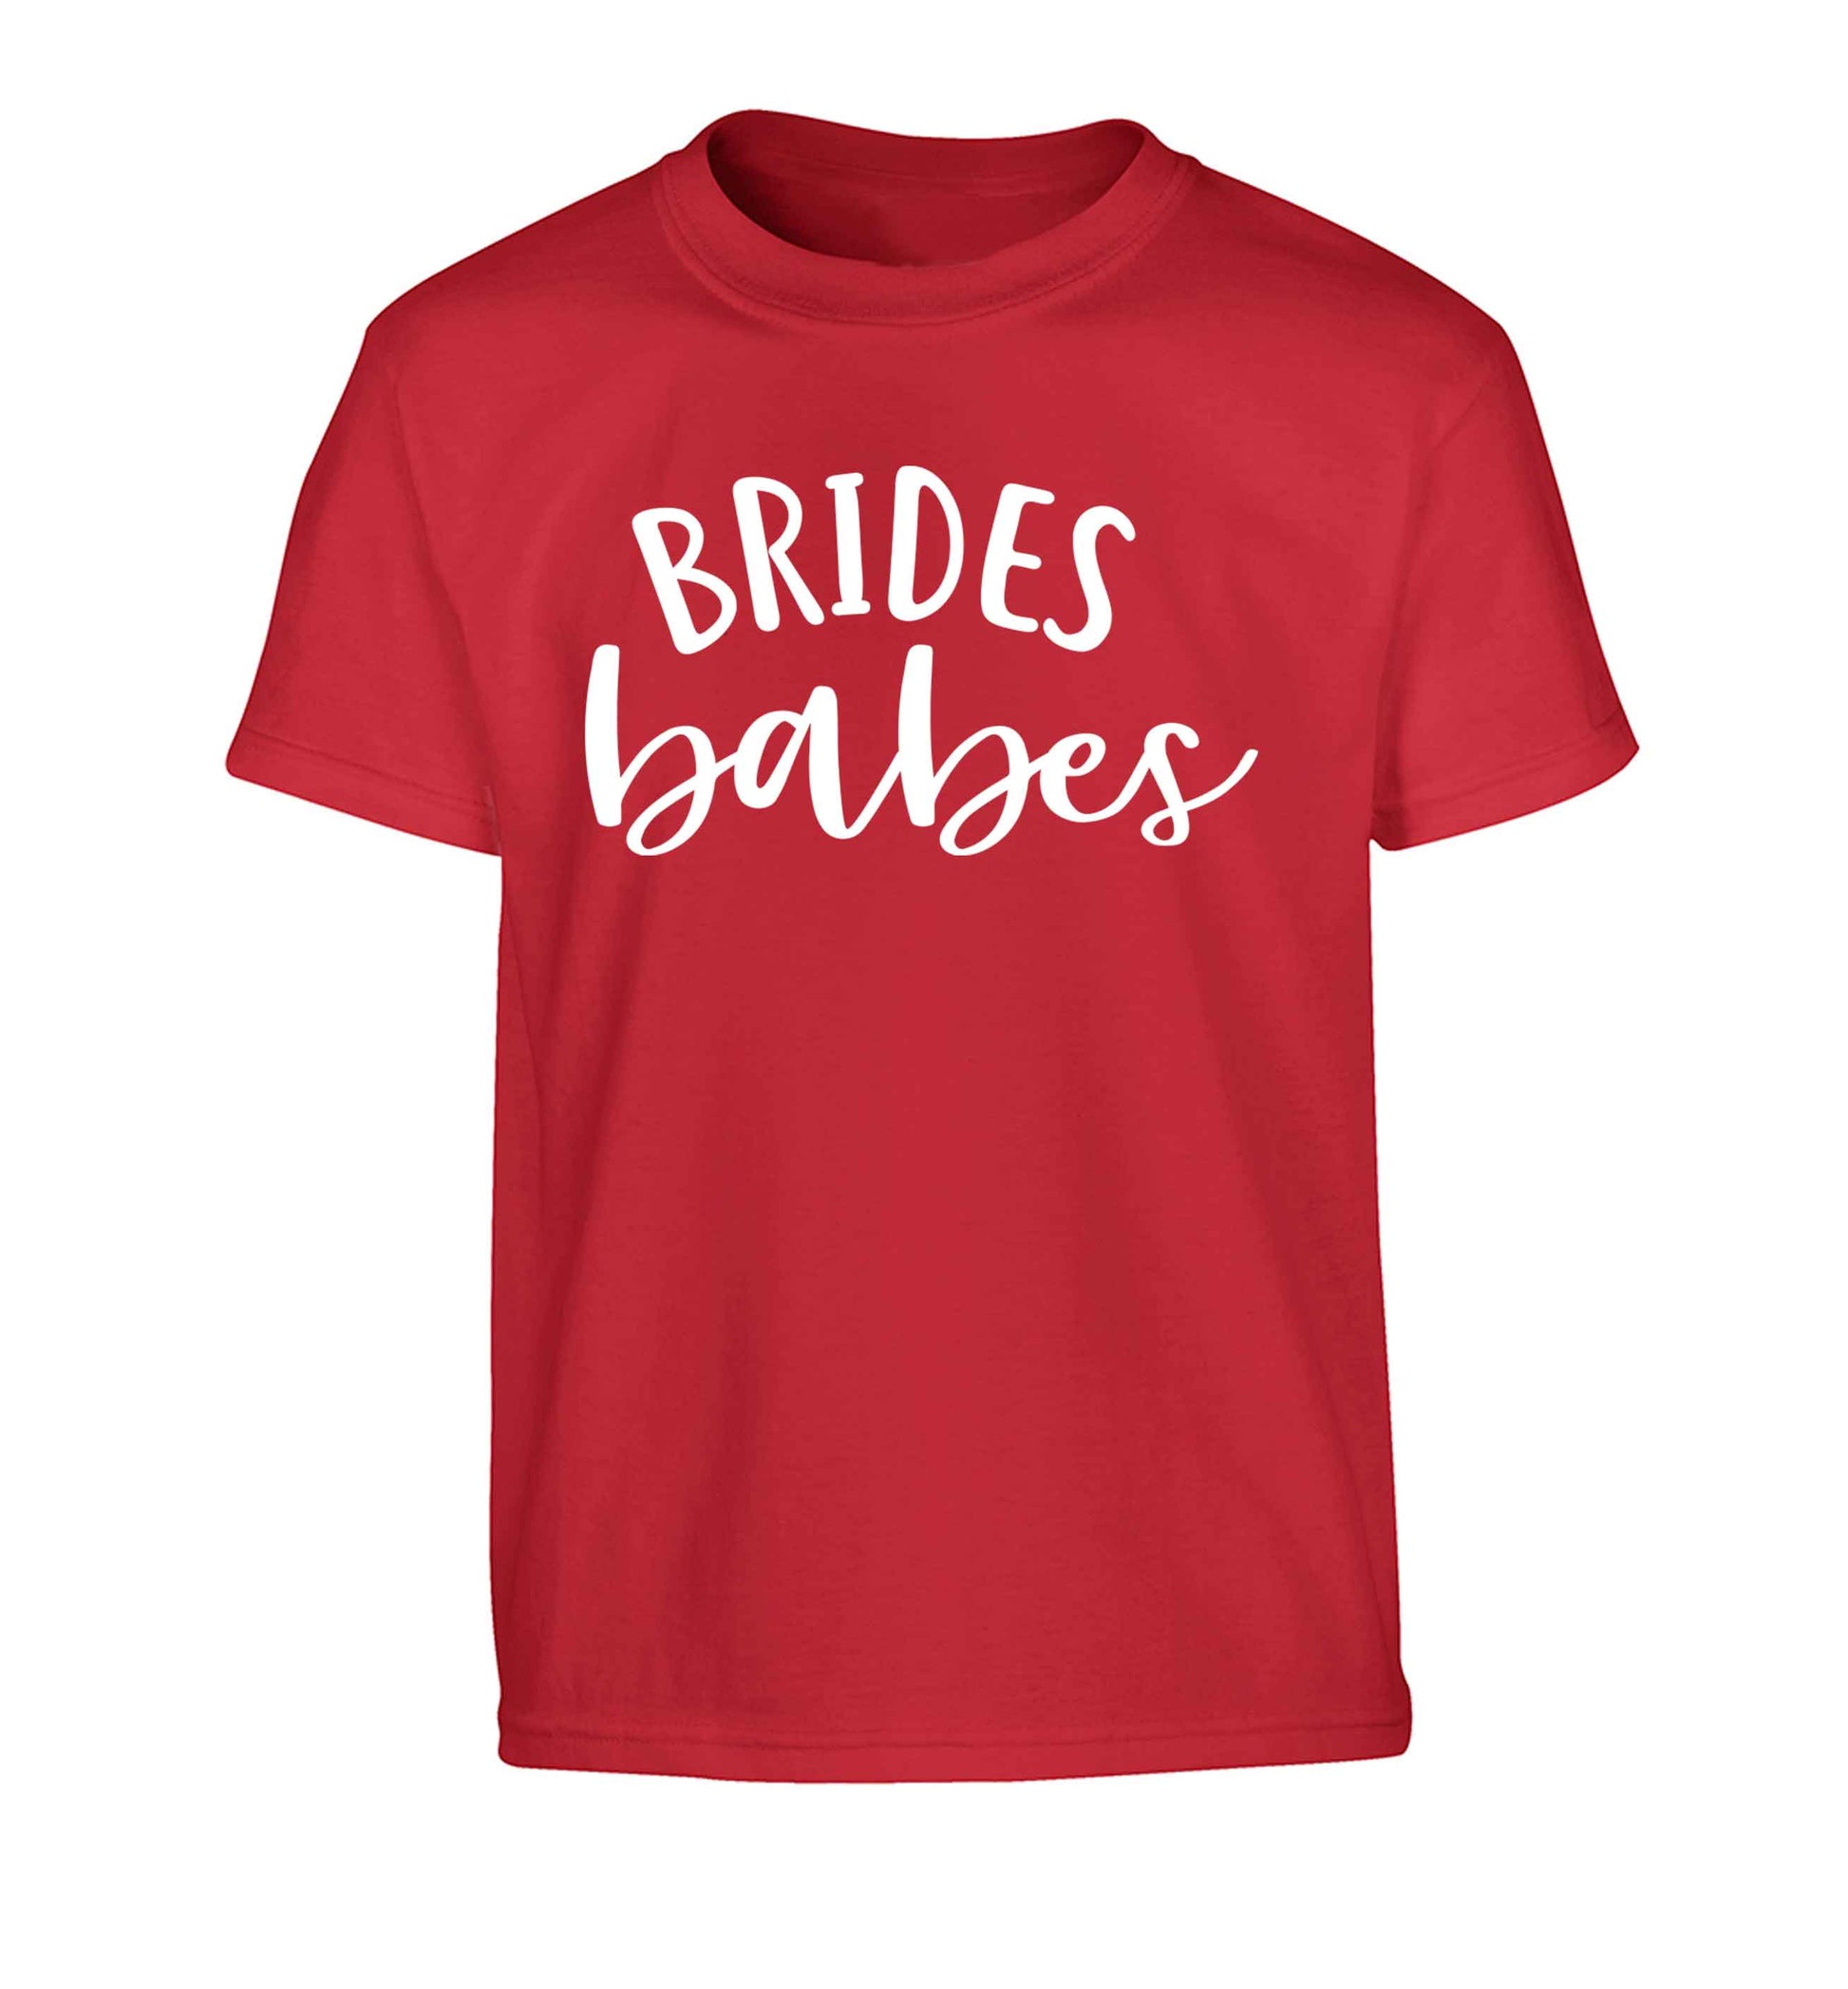 Brides Babes Children's red Tshirt 12-13 Years